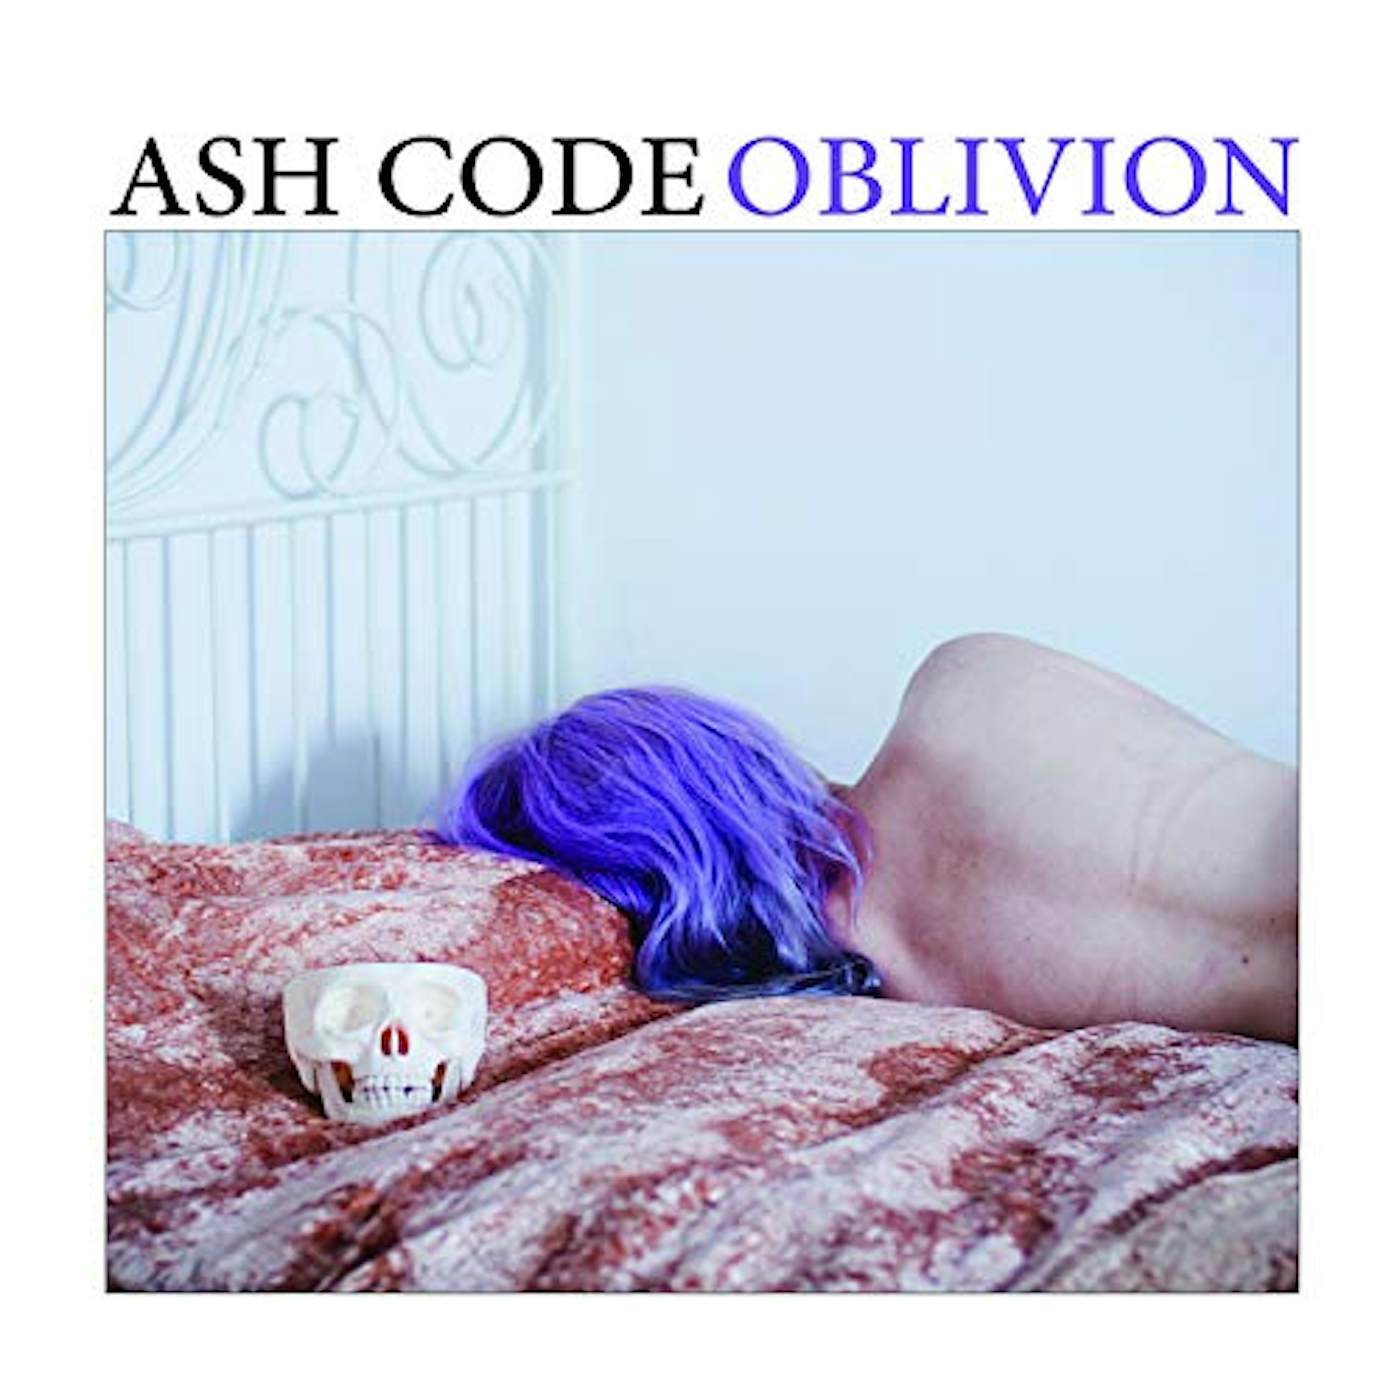 Ash Code Oblivion Vinyl Record